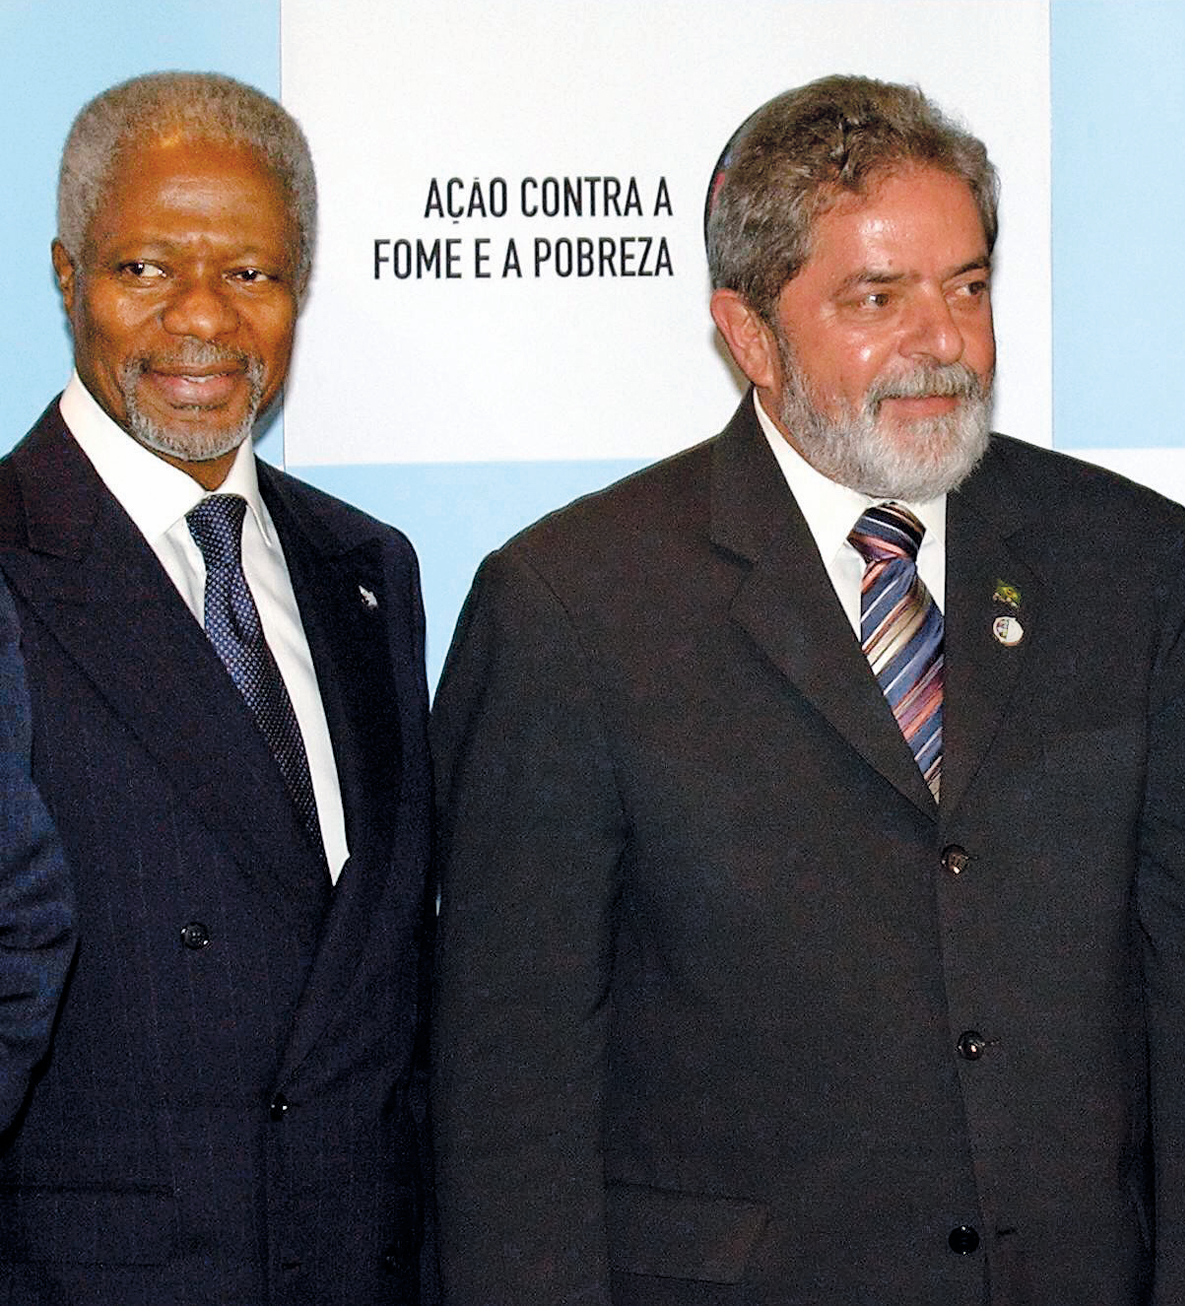 Fotografia. Kofi Annan, homem de cabelo e barba grisalhos. Veste terno azul escuro. Está ao lado de Lula, homem de cabelo e barba grisalhos. Veste terno preto e gravata colorida listrada. Atrás deles, na parede, está escrito: AÇÃO CONTRA A FOME E A POBREZA.